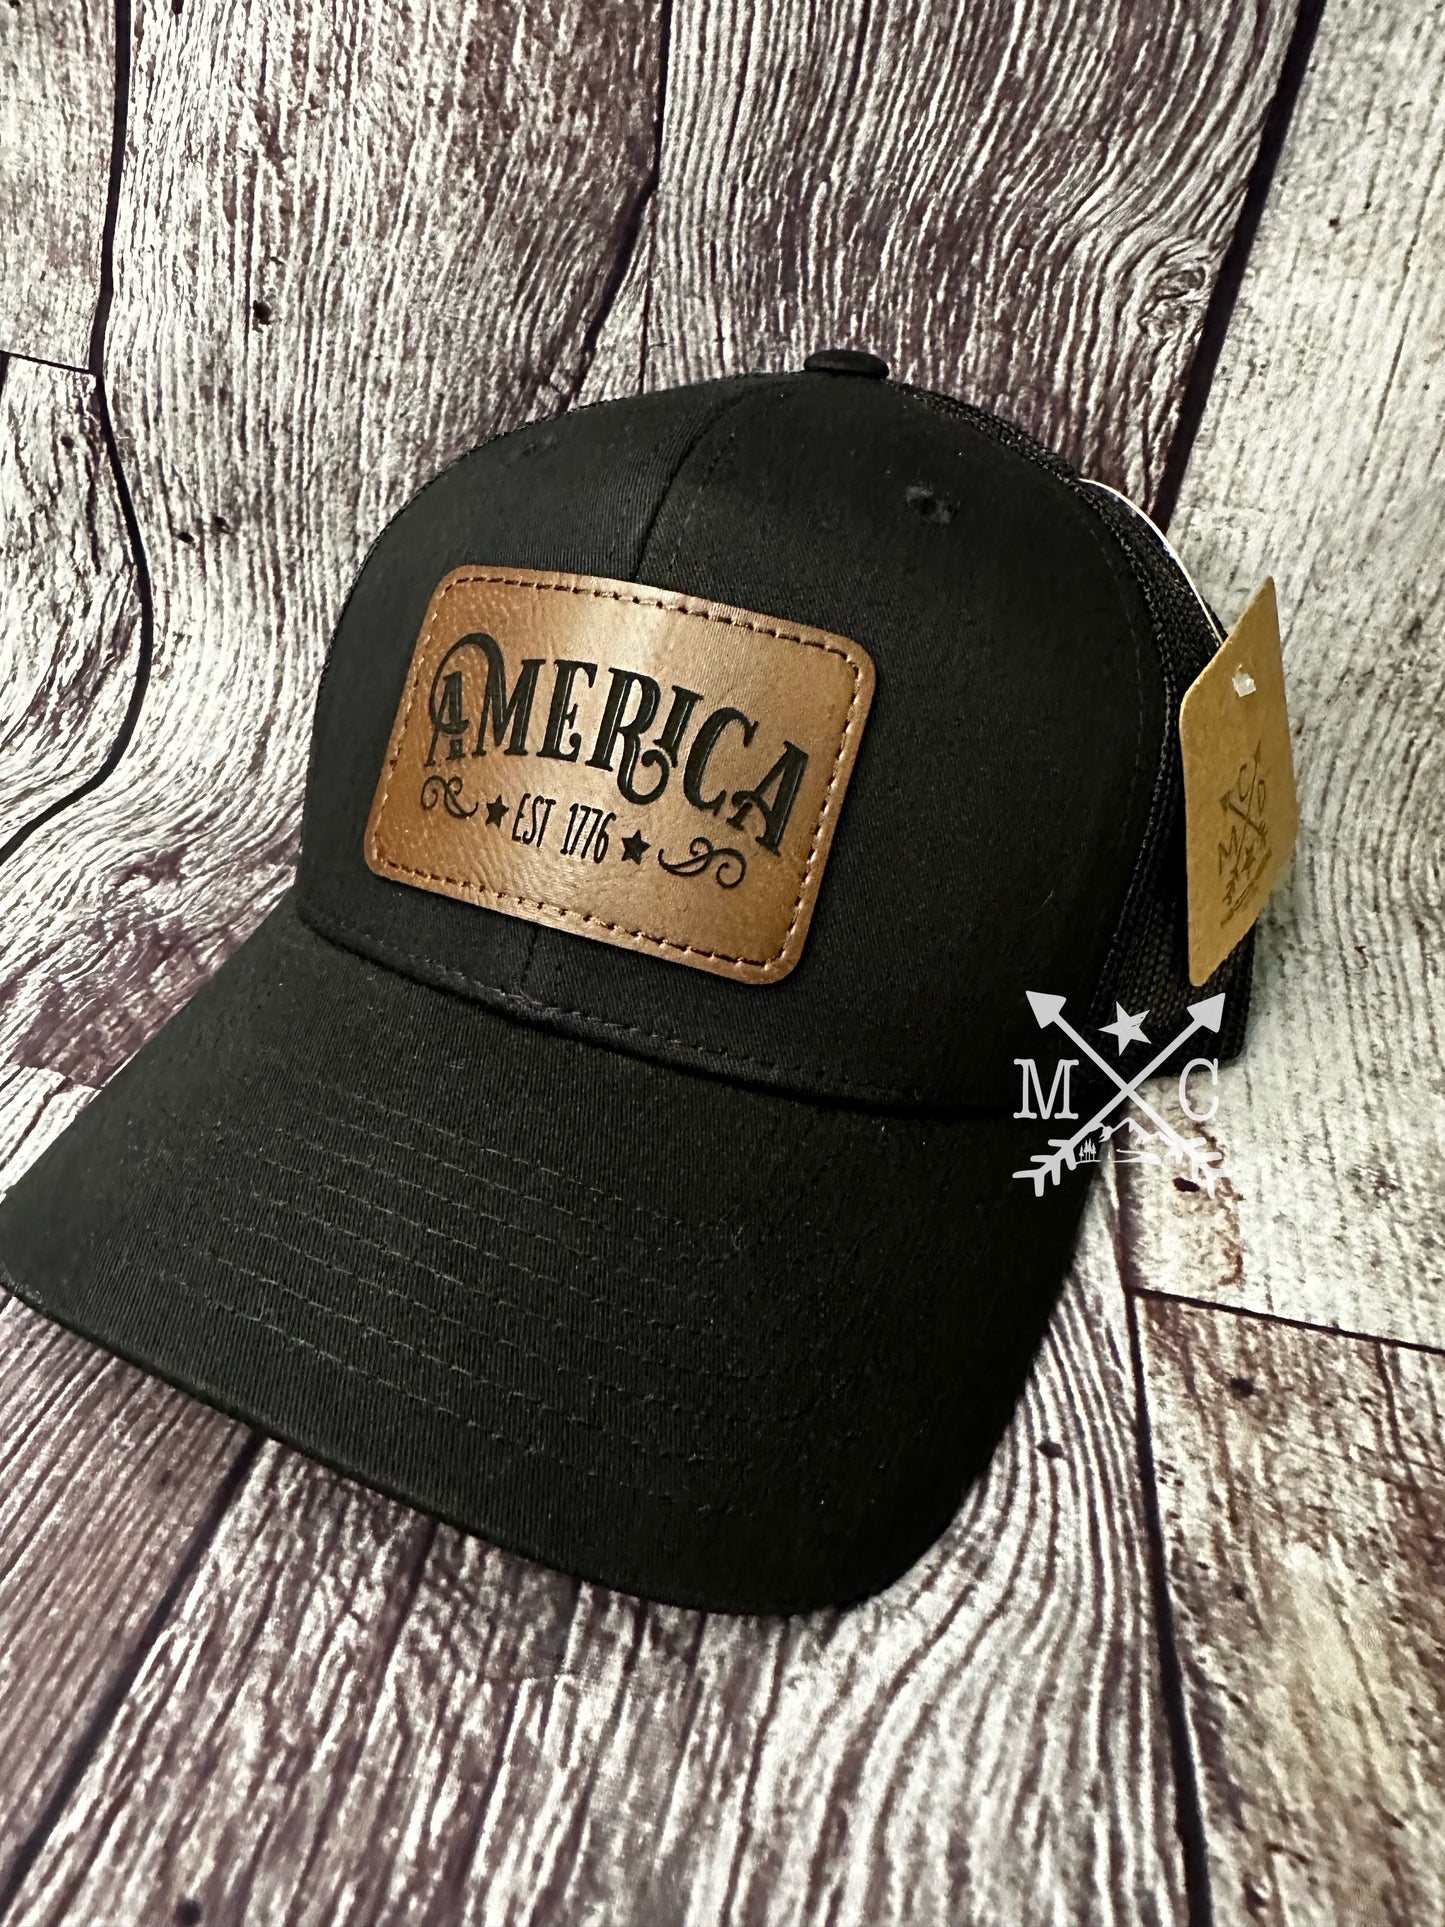 America 1776 Hat